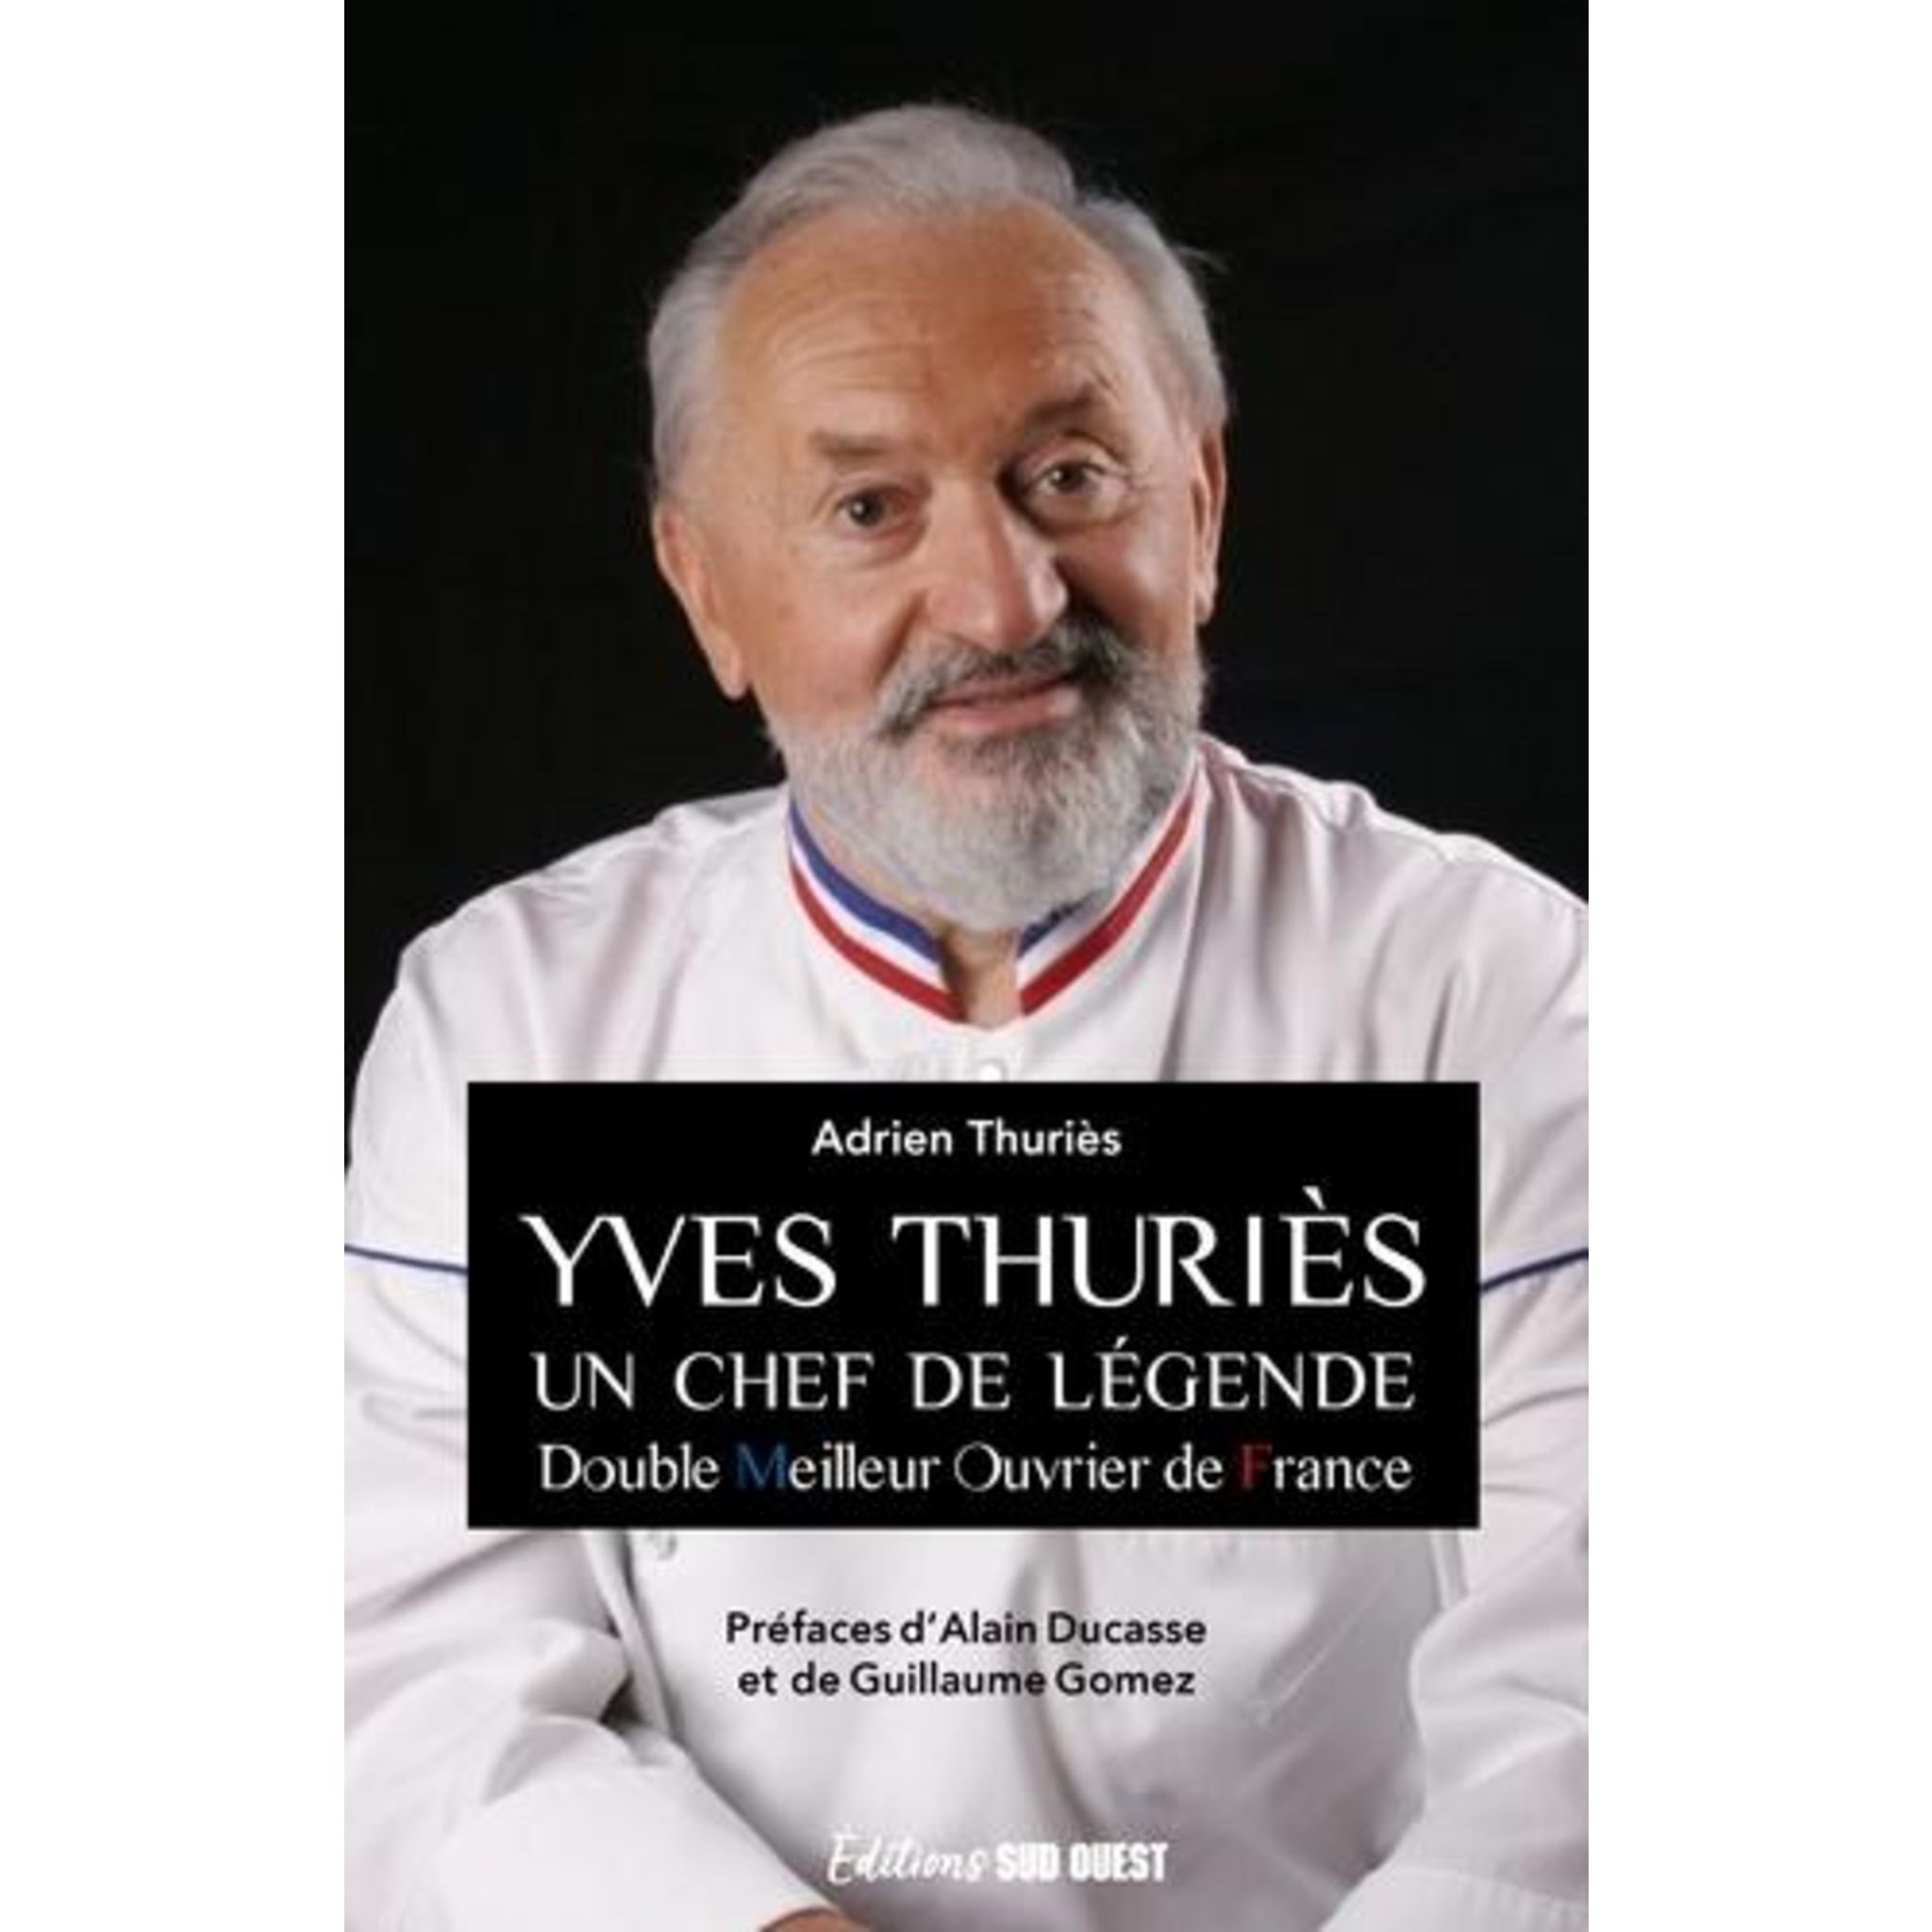 Coffret chocolat Yves Thuriès, double meilleur ouvrier de France